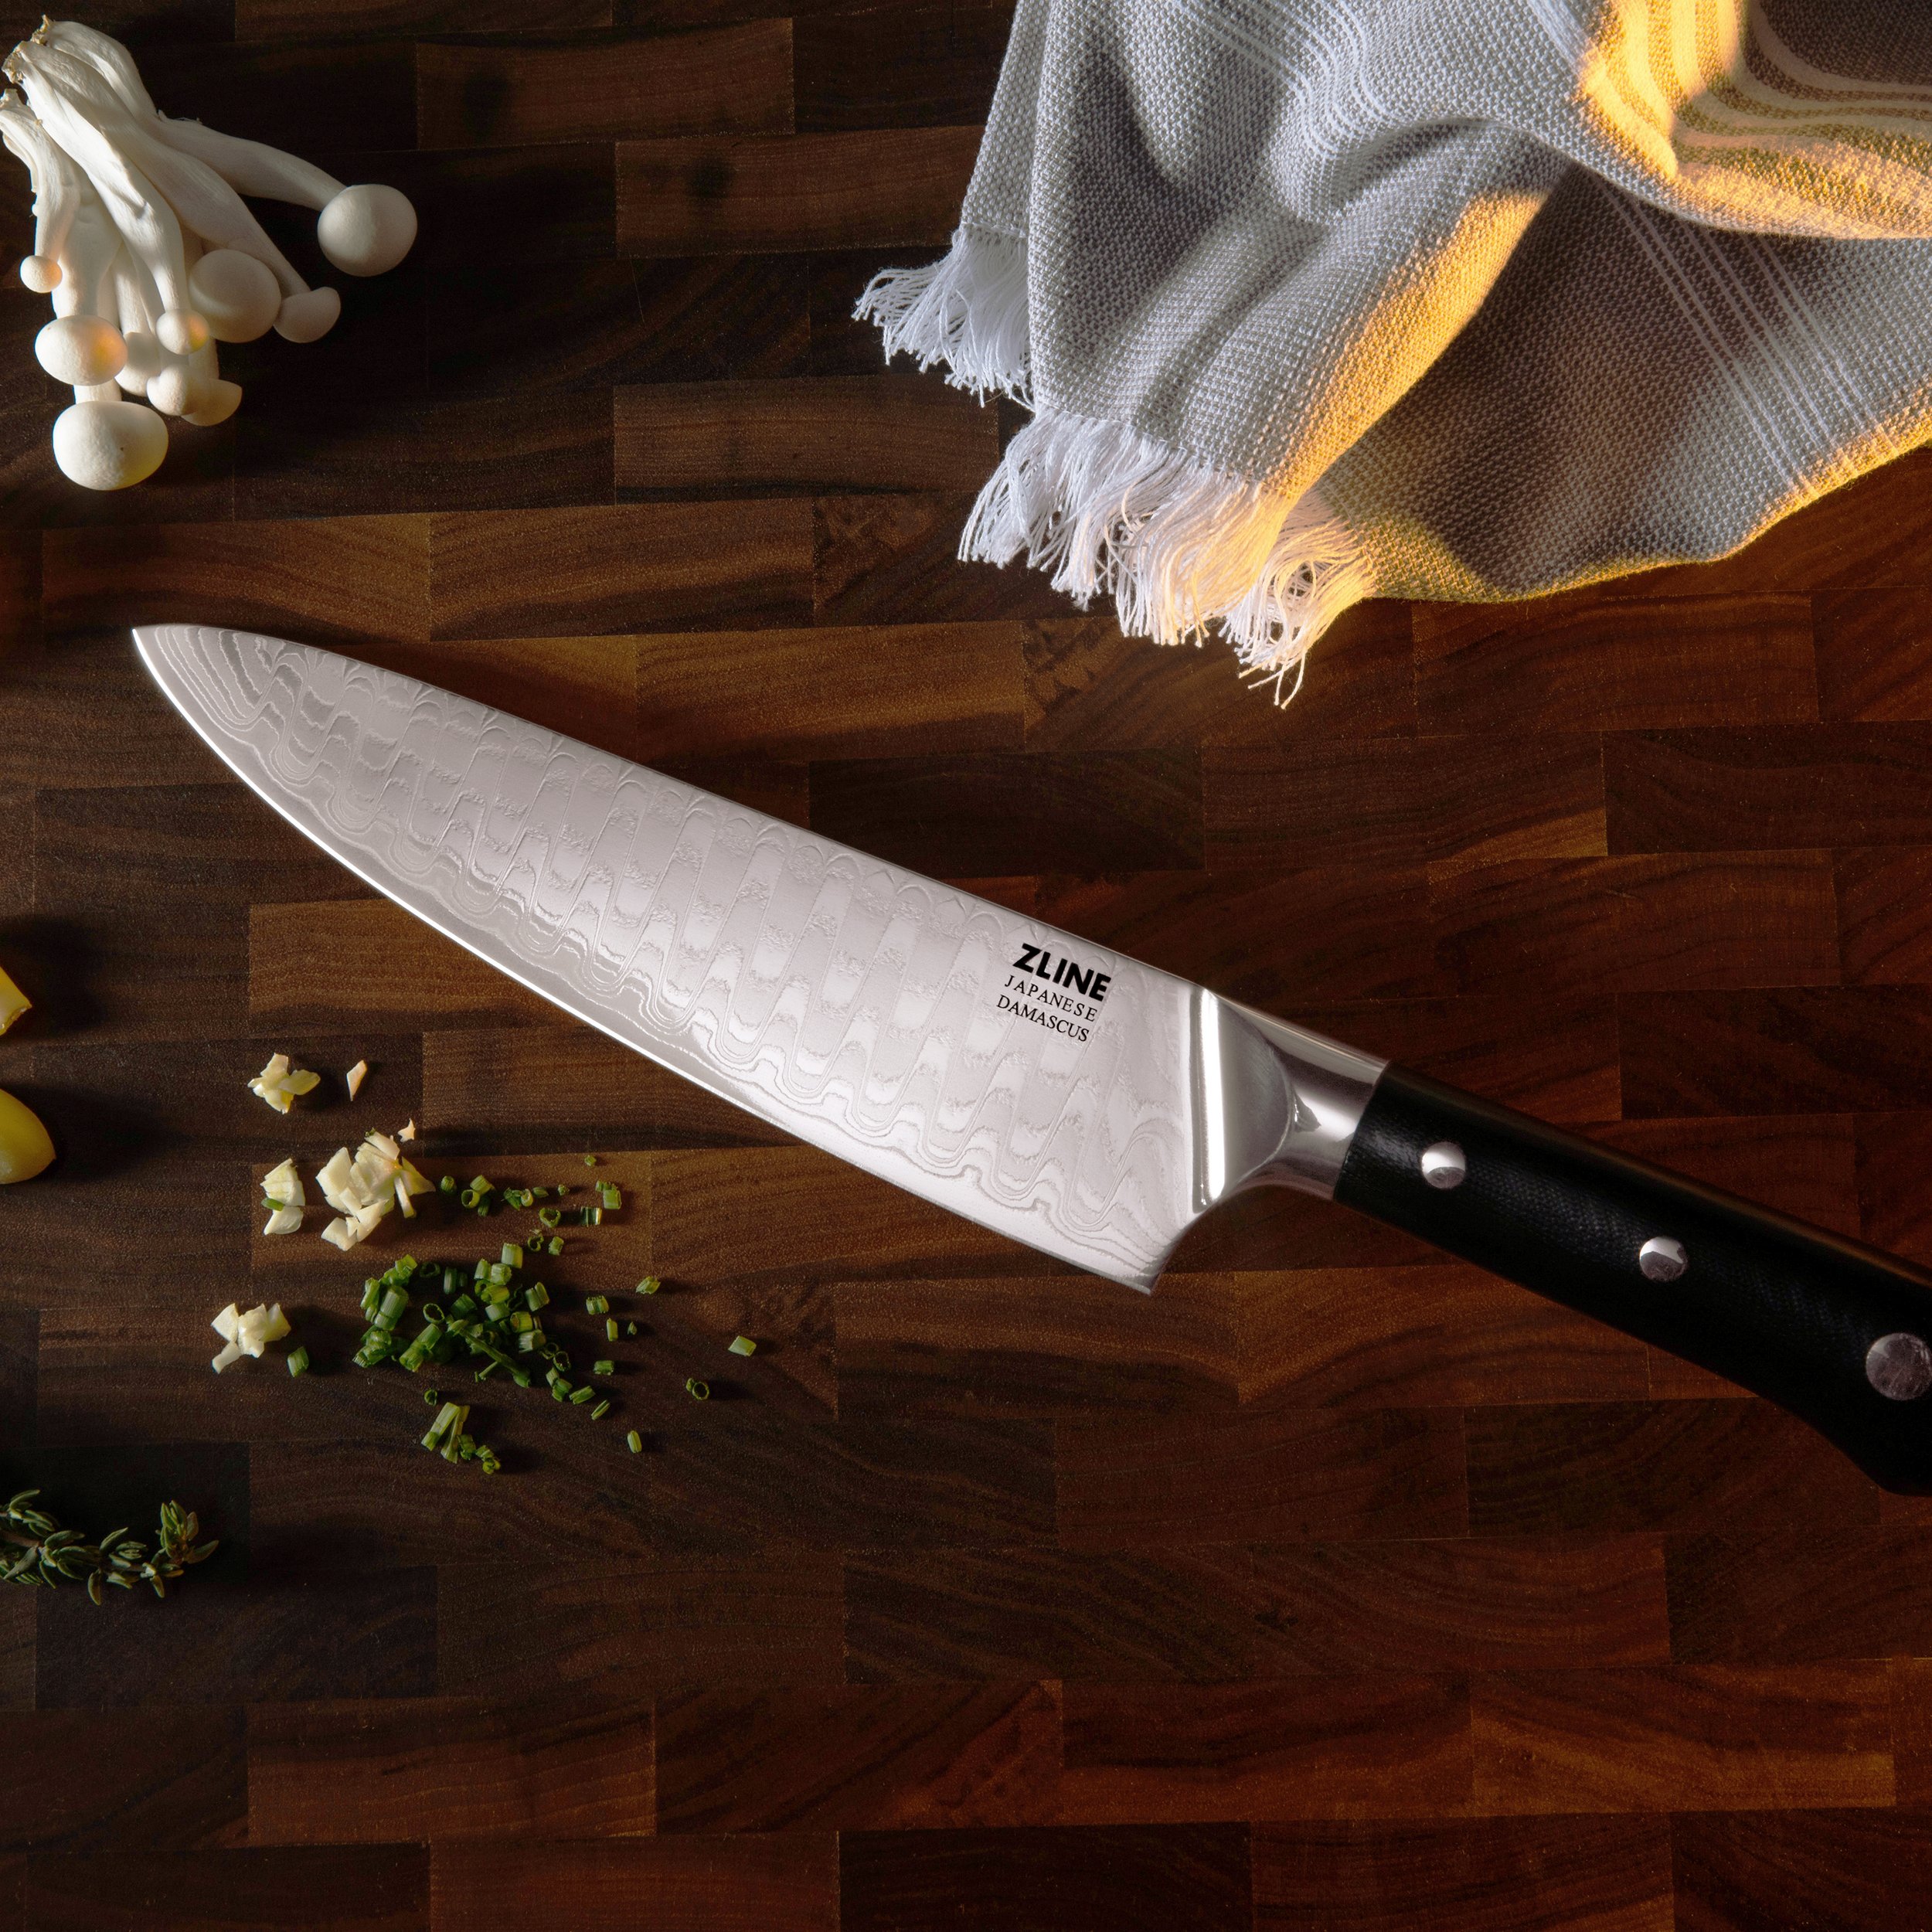 ZLINE 3-Piece Professional German Steel Kitchen Knife Set – ZLINE Kitchen  and Bath Parts